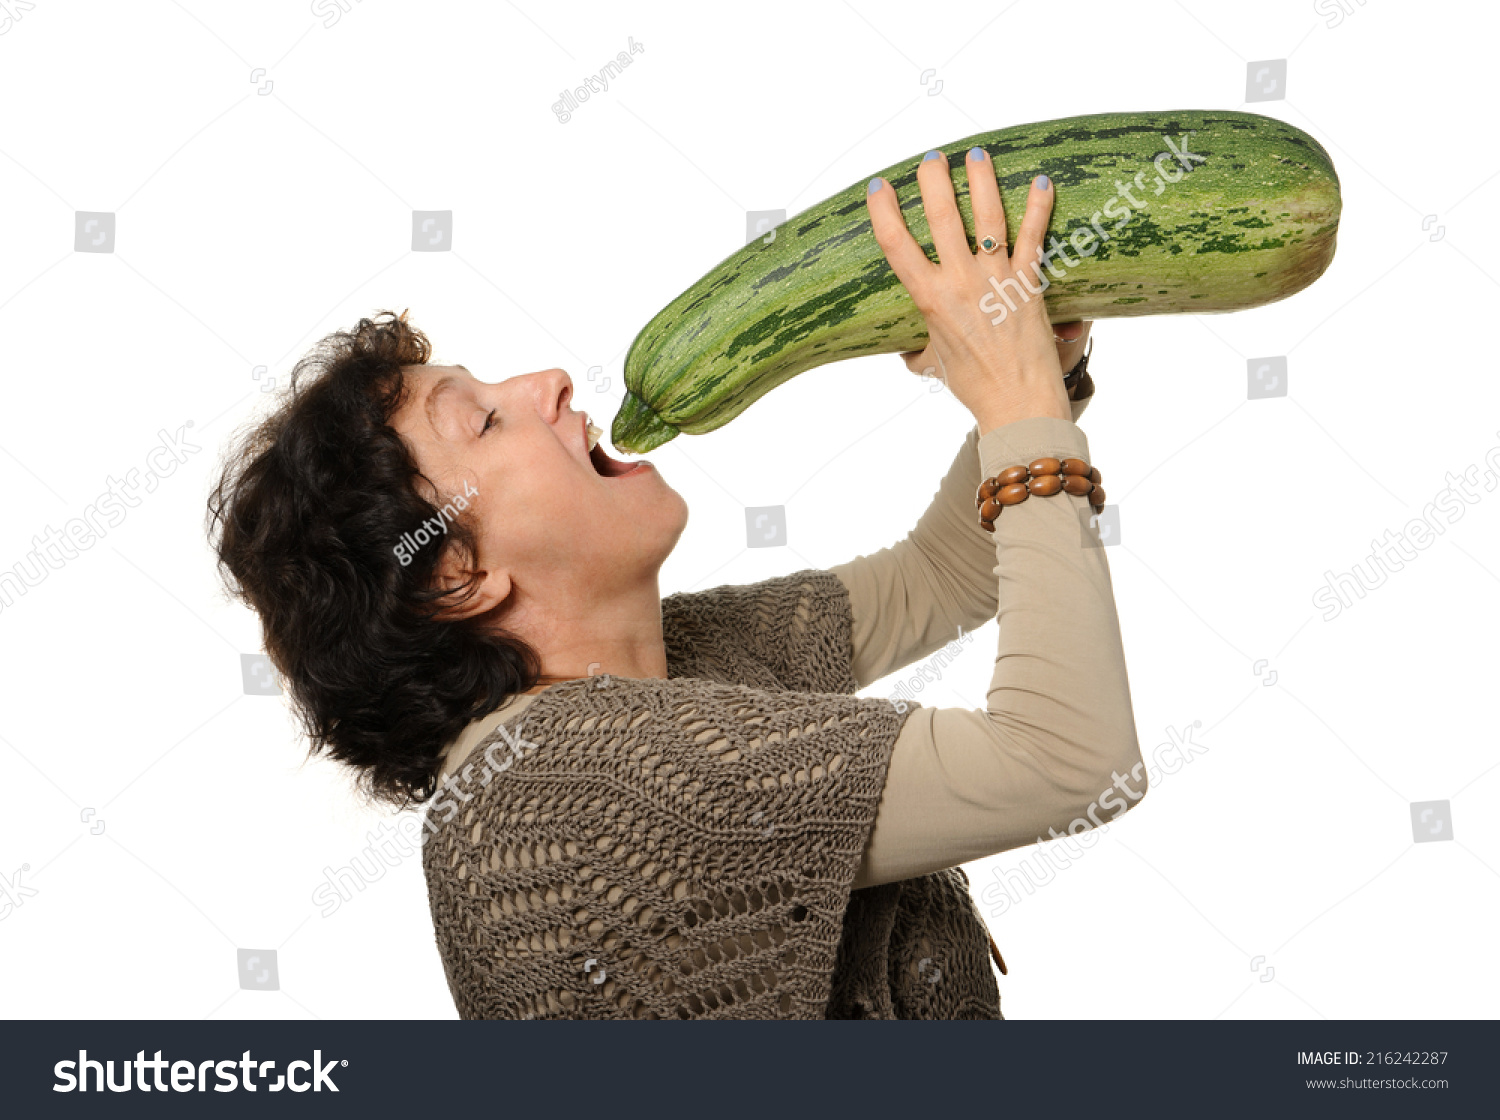 Anya and her zucchini image